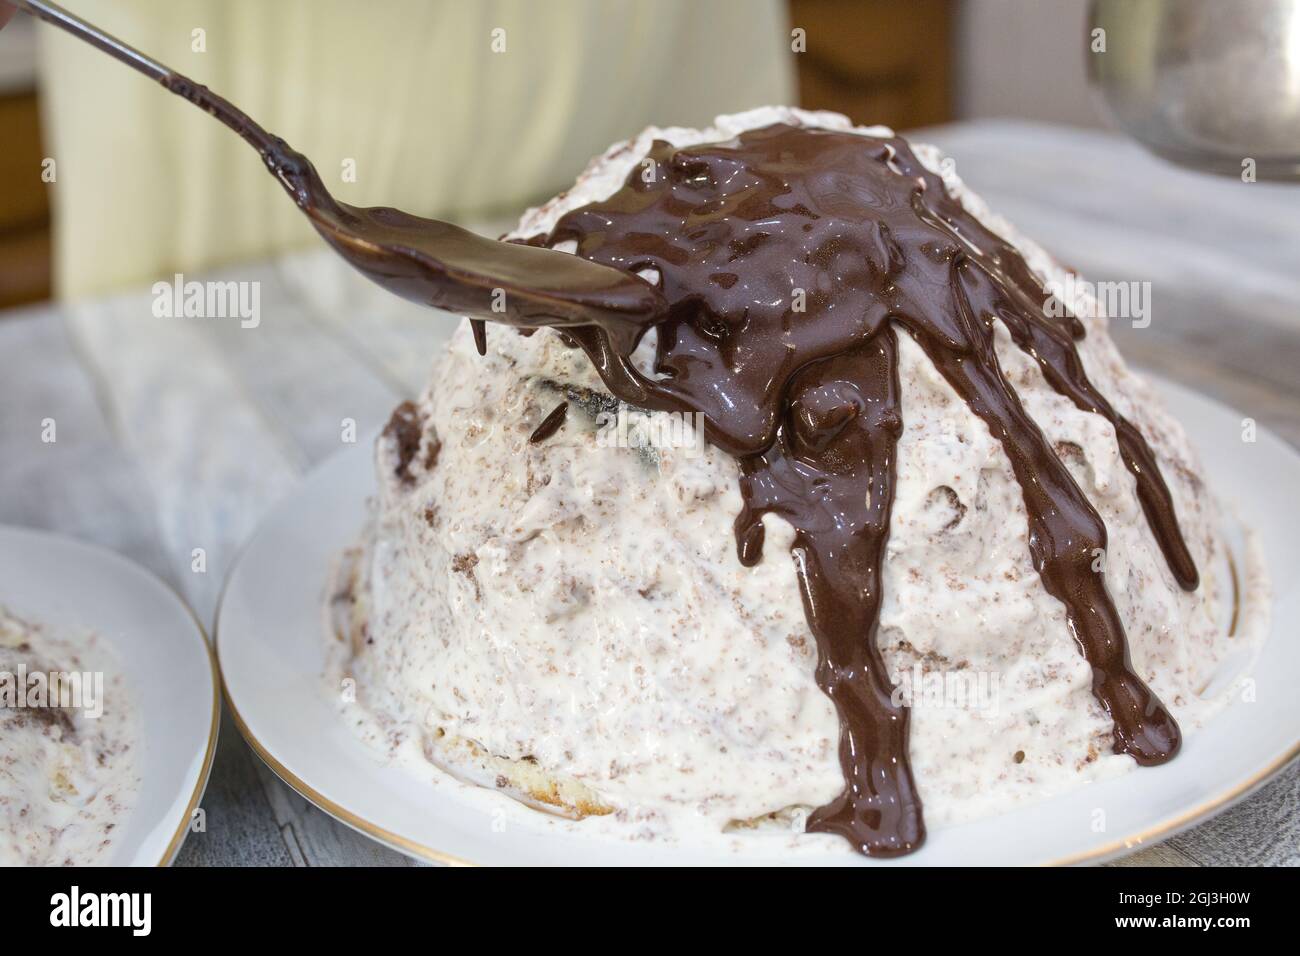 Kuchenherstellung. Vorbereiteter Schokoladenkuchen mit saurer Creme wird mit Schokoladeneier gegossen. Schritt für Schritt Rezept für Schokoladenkuchen. Serie. Backen von CO Stockfoto